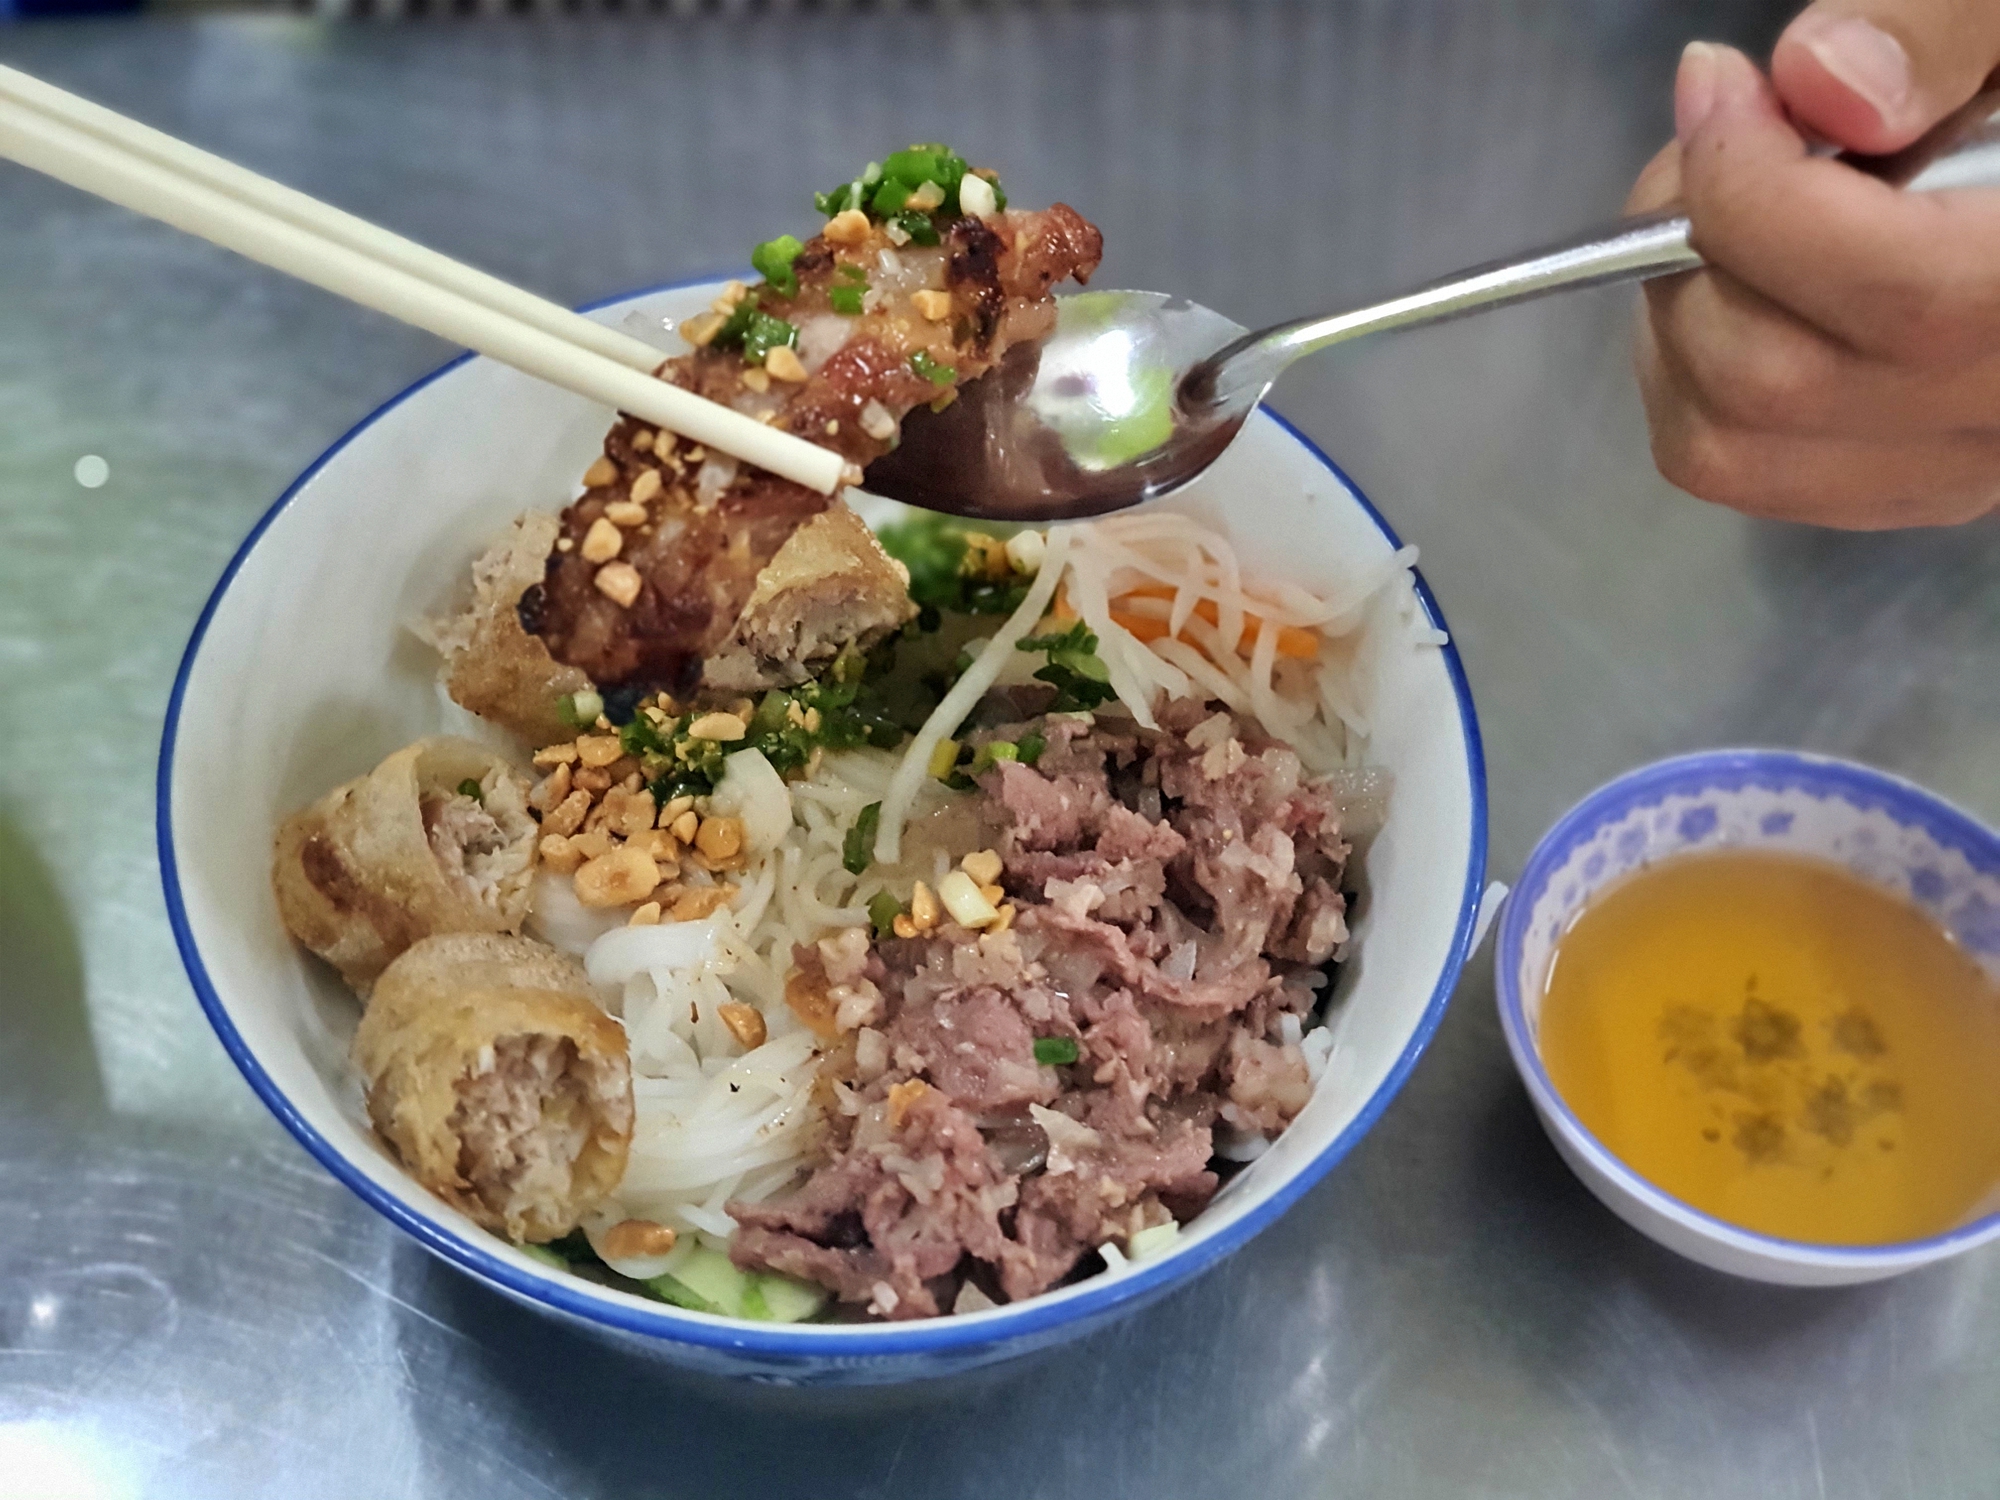 Sài Gòn quán: Quán bún thịt nướng có thịt bò xào hành tây nổi tiếng quận 1 - Ảnh 3.